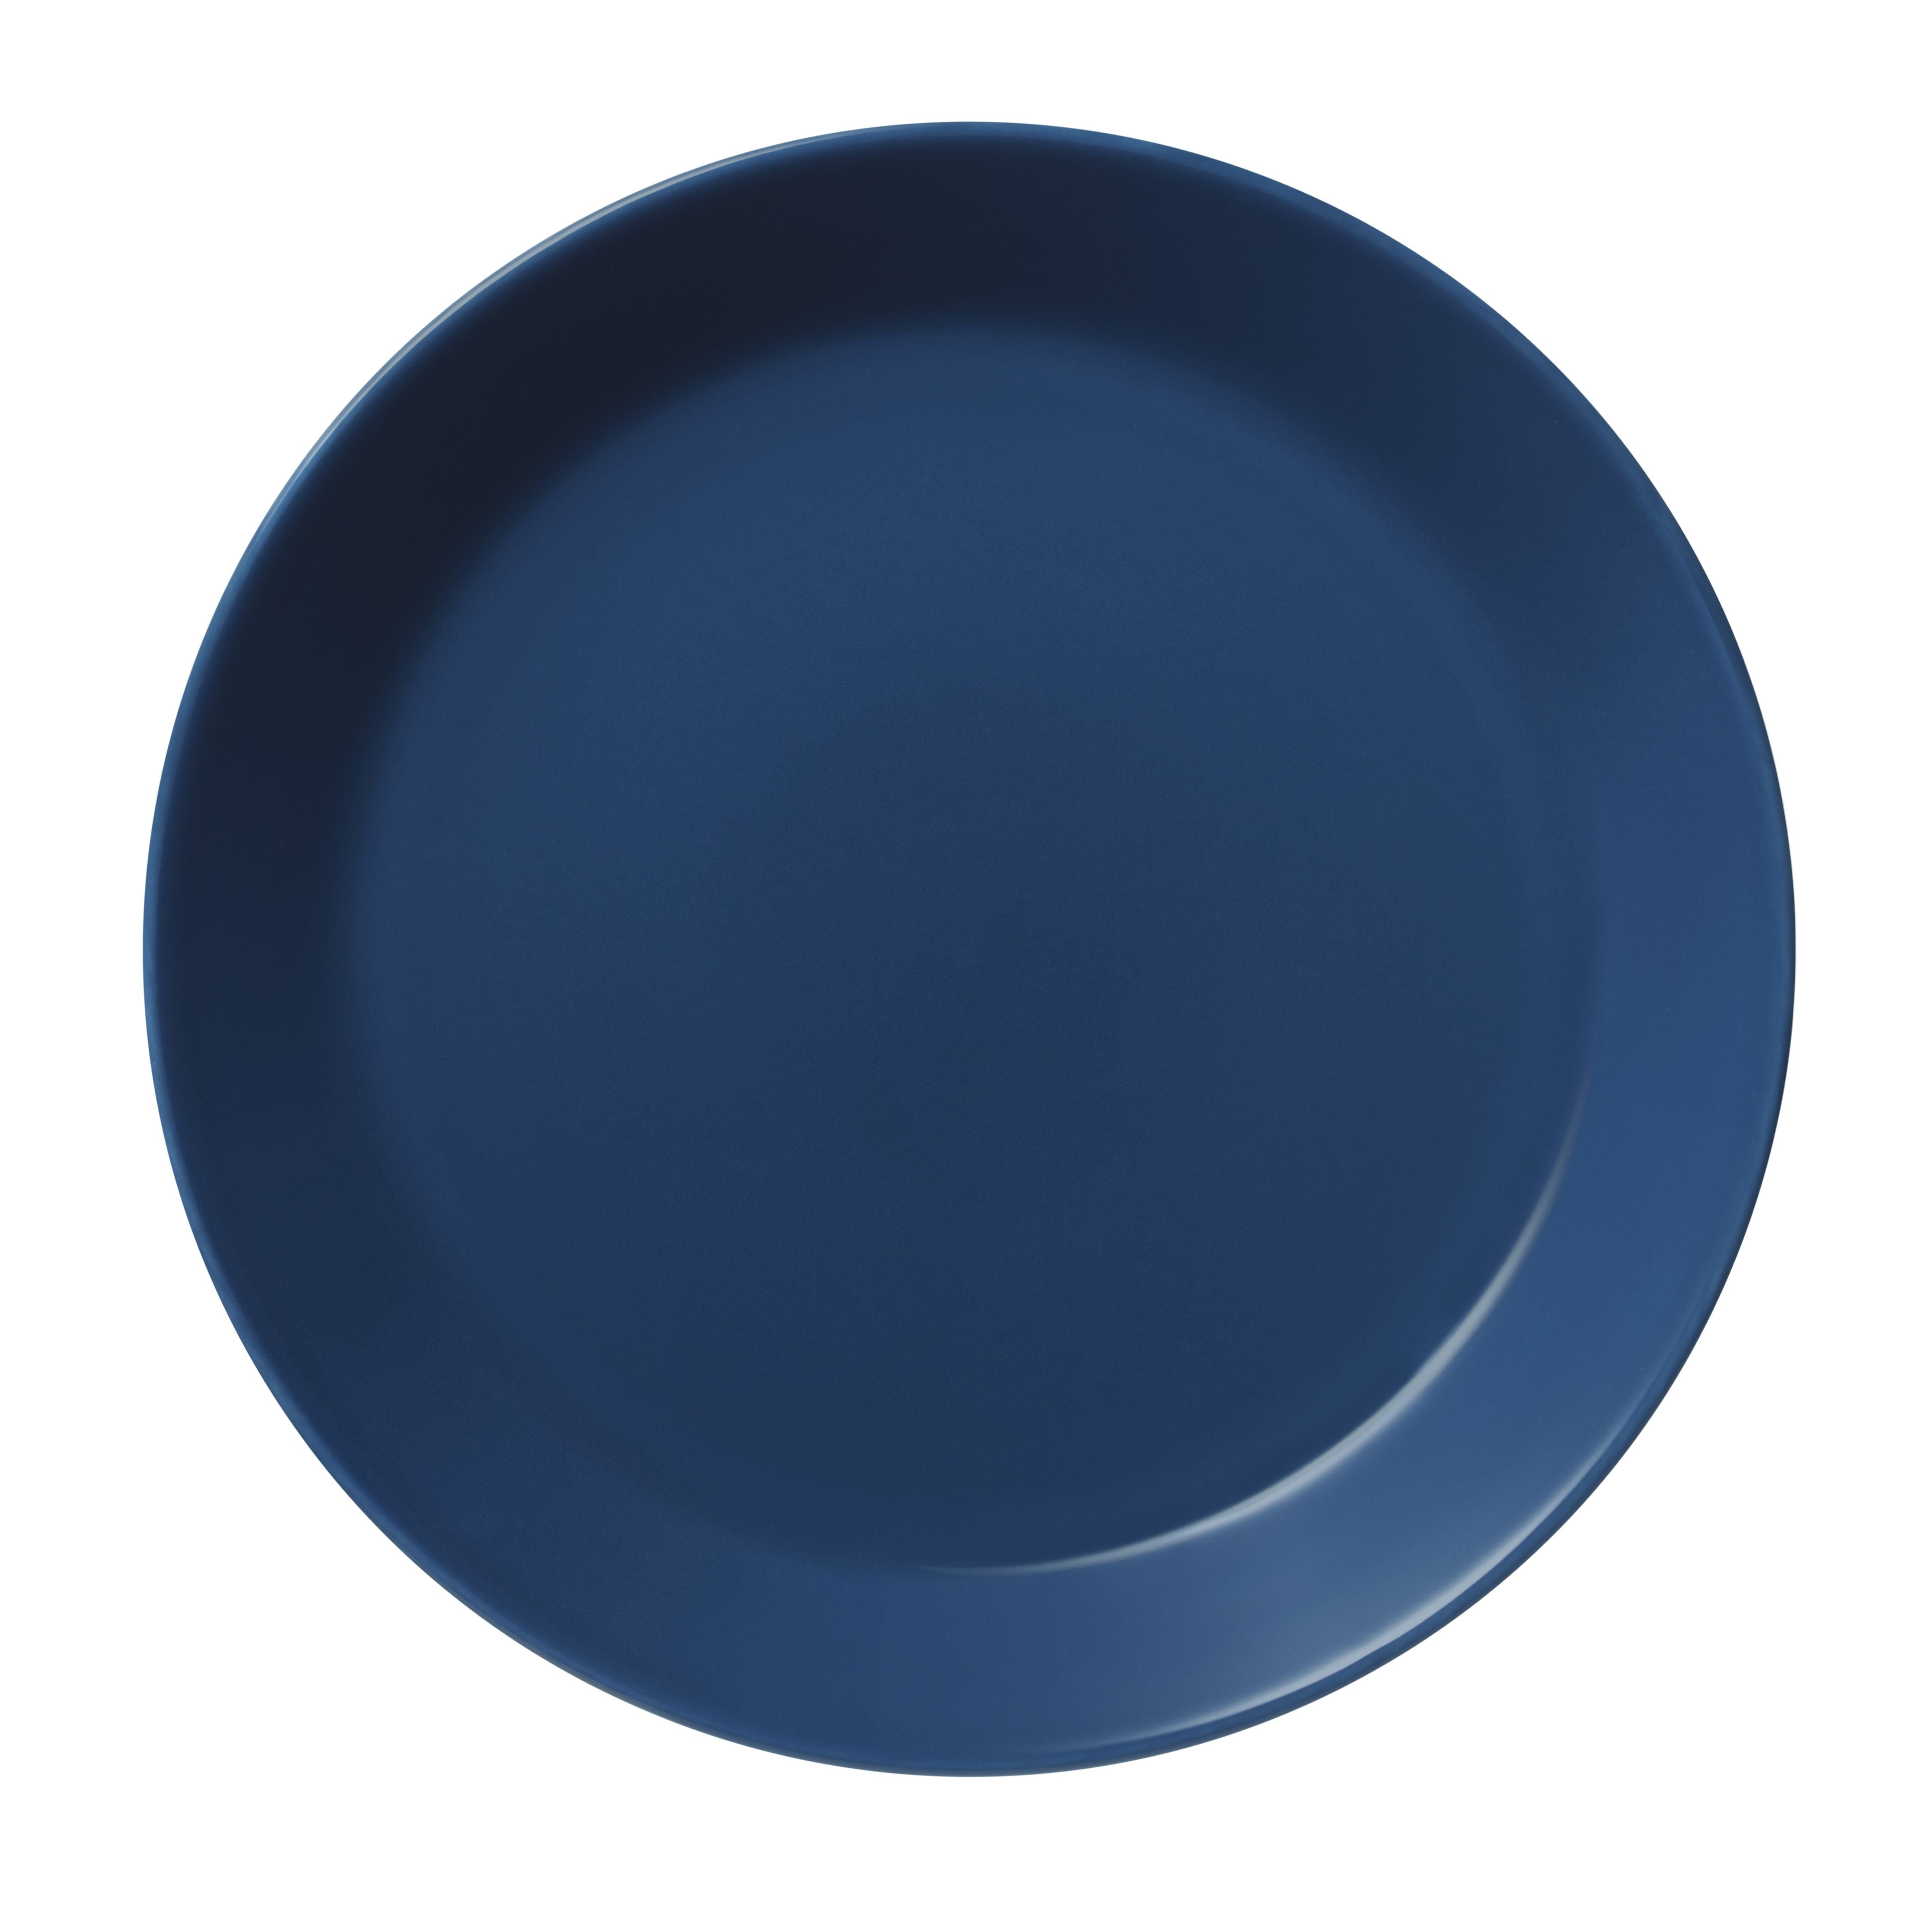 Iittala Teema Plate 23 cm, vintage modrá